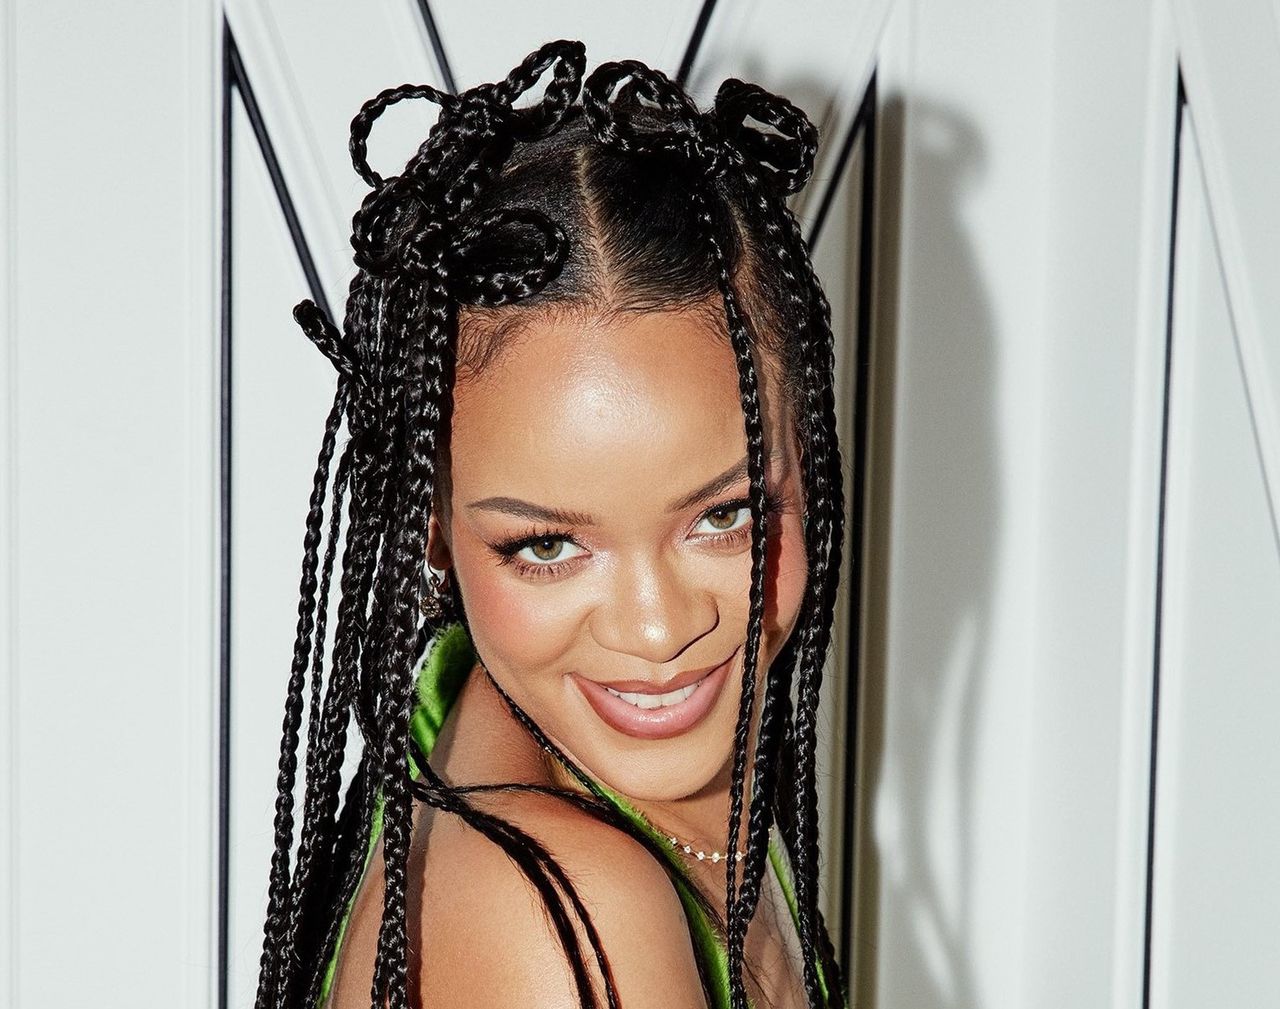 Rihanna reklamuje nową odzieżową kolekcję. Ten set stał się hitem